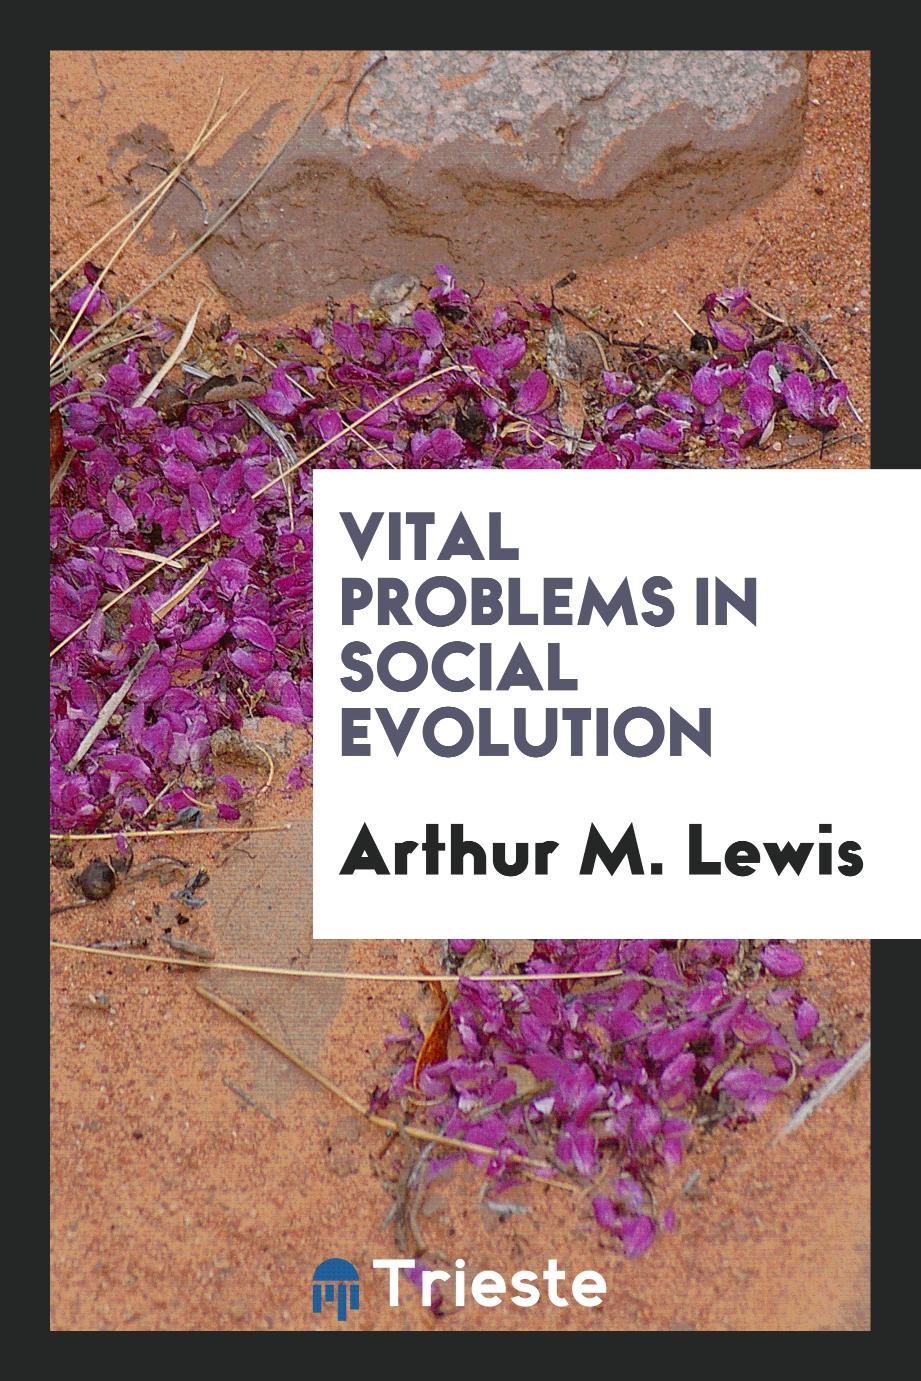 Vital problems in social evolution